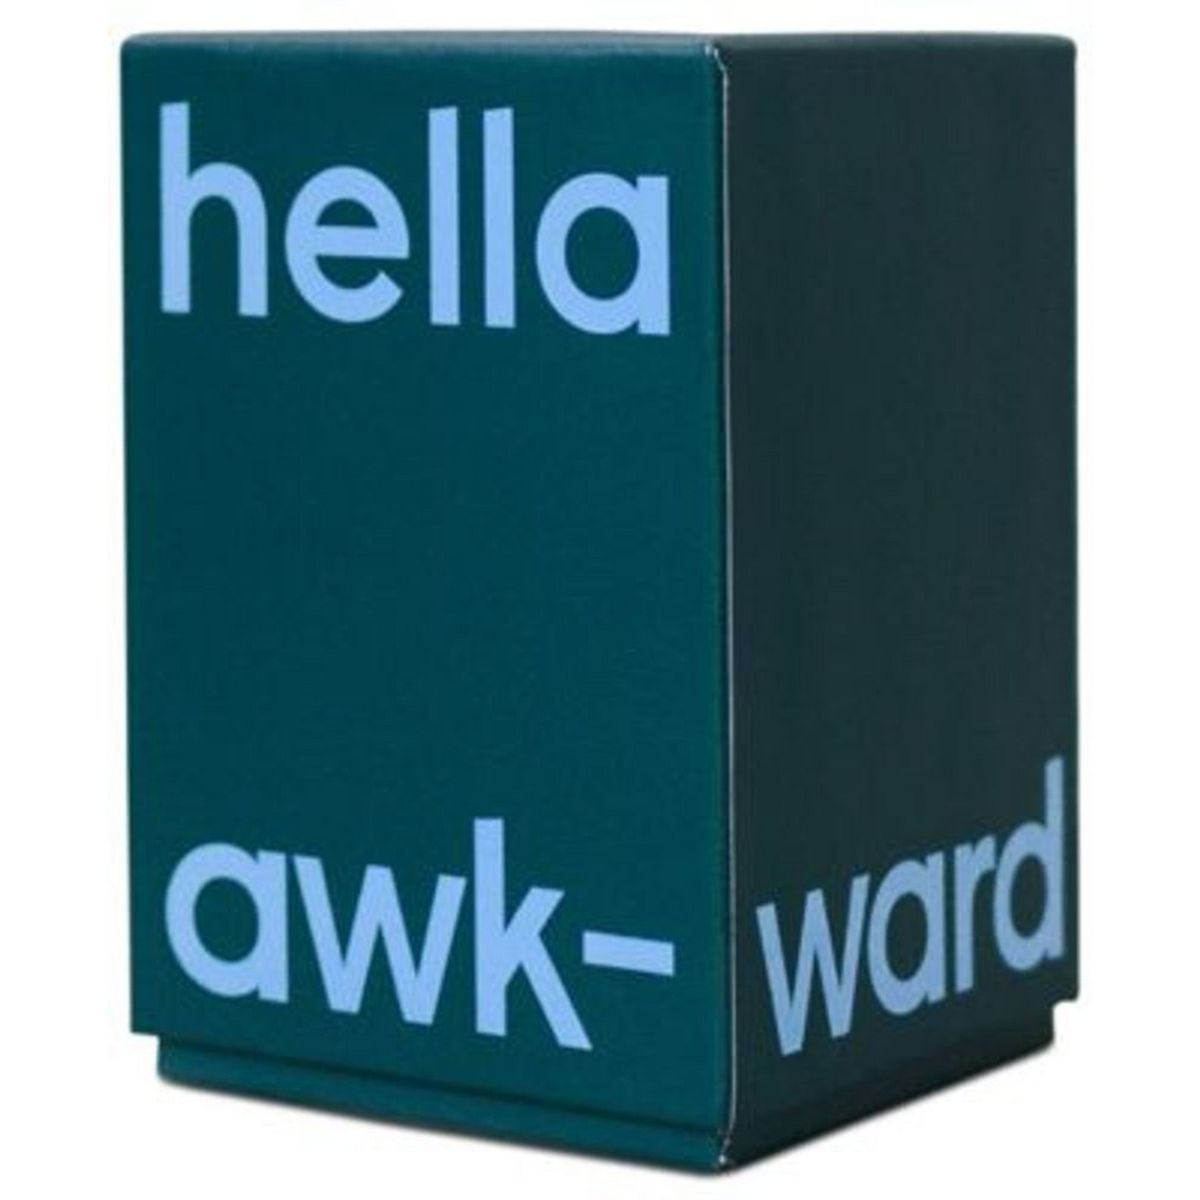 Hella Awkward Game | Target